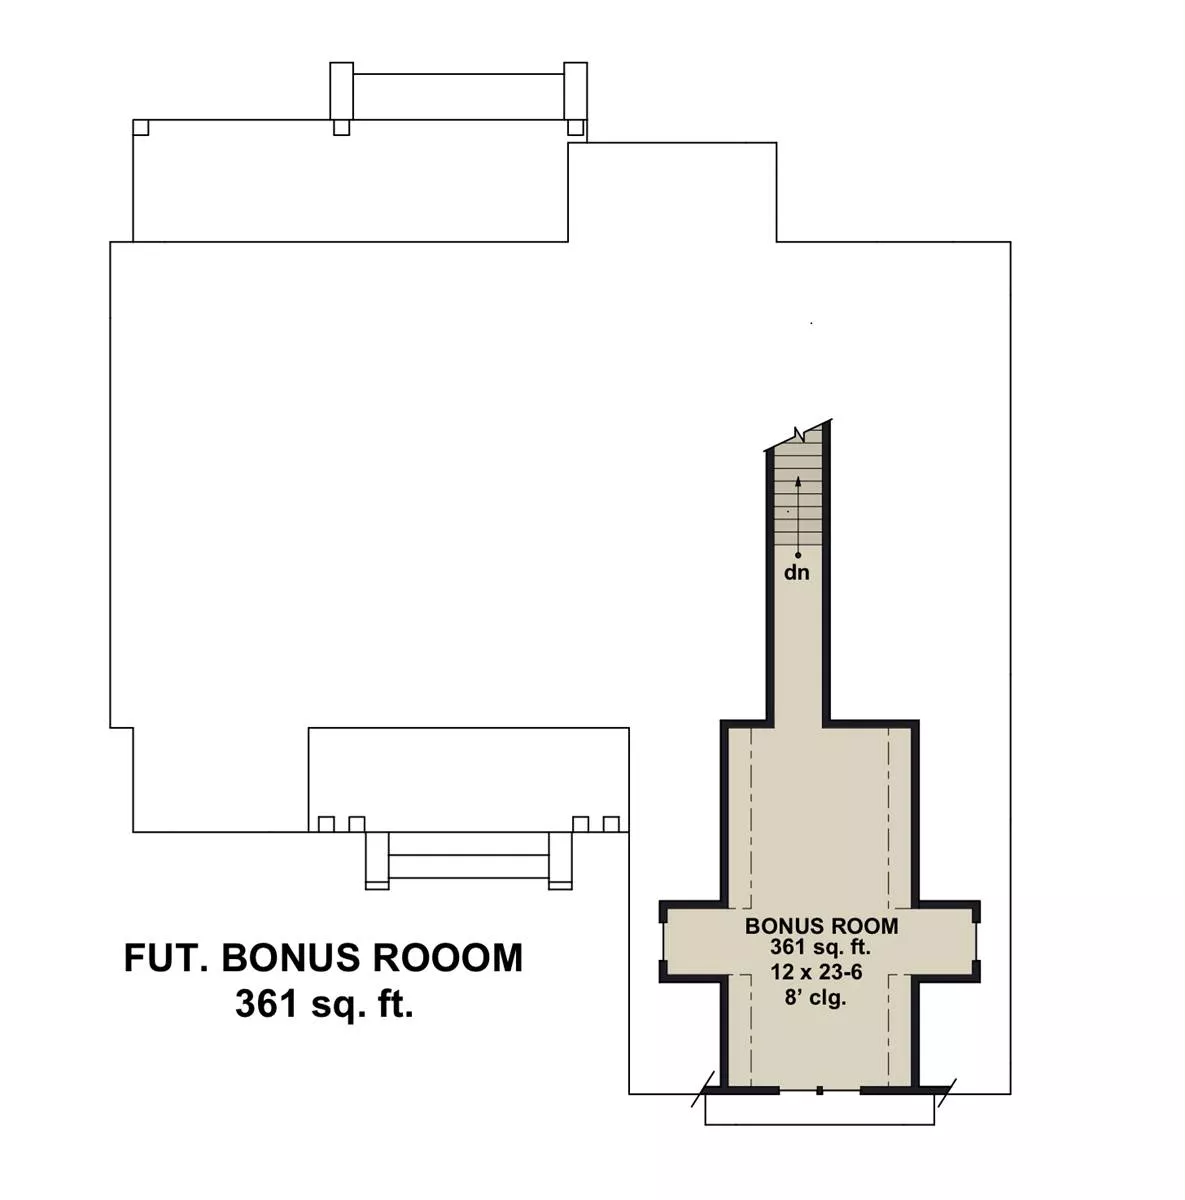 Bonus Floor Plan For Immediate or Future Finishing